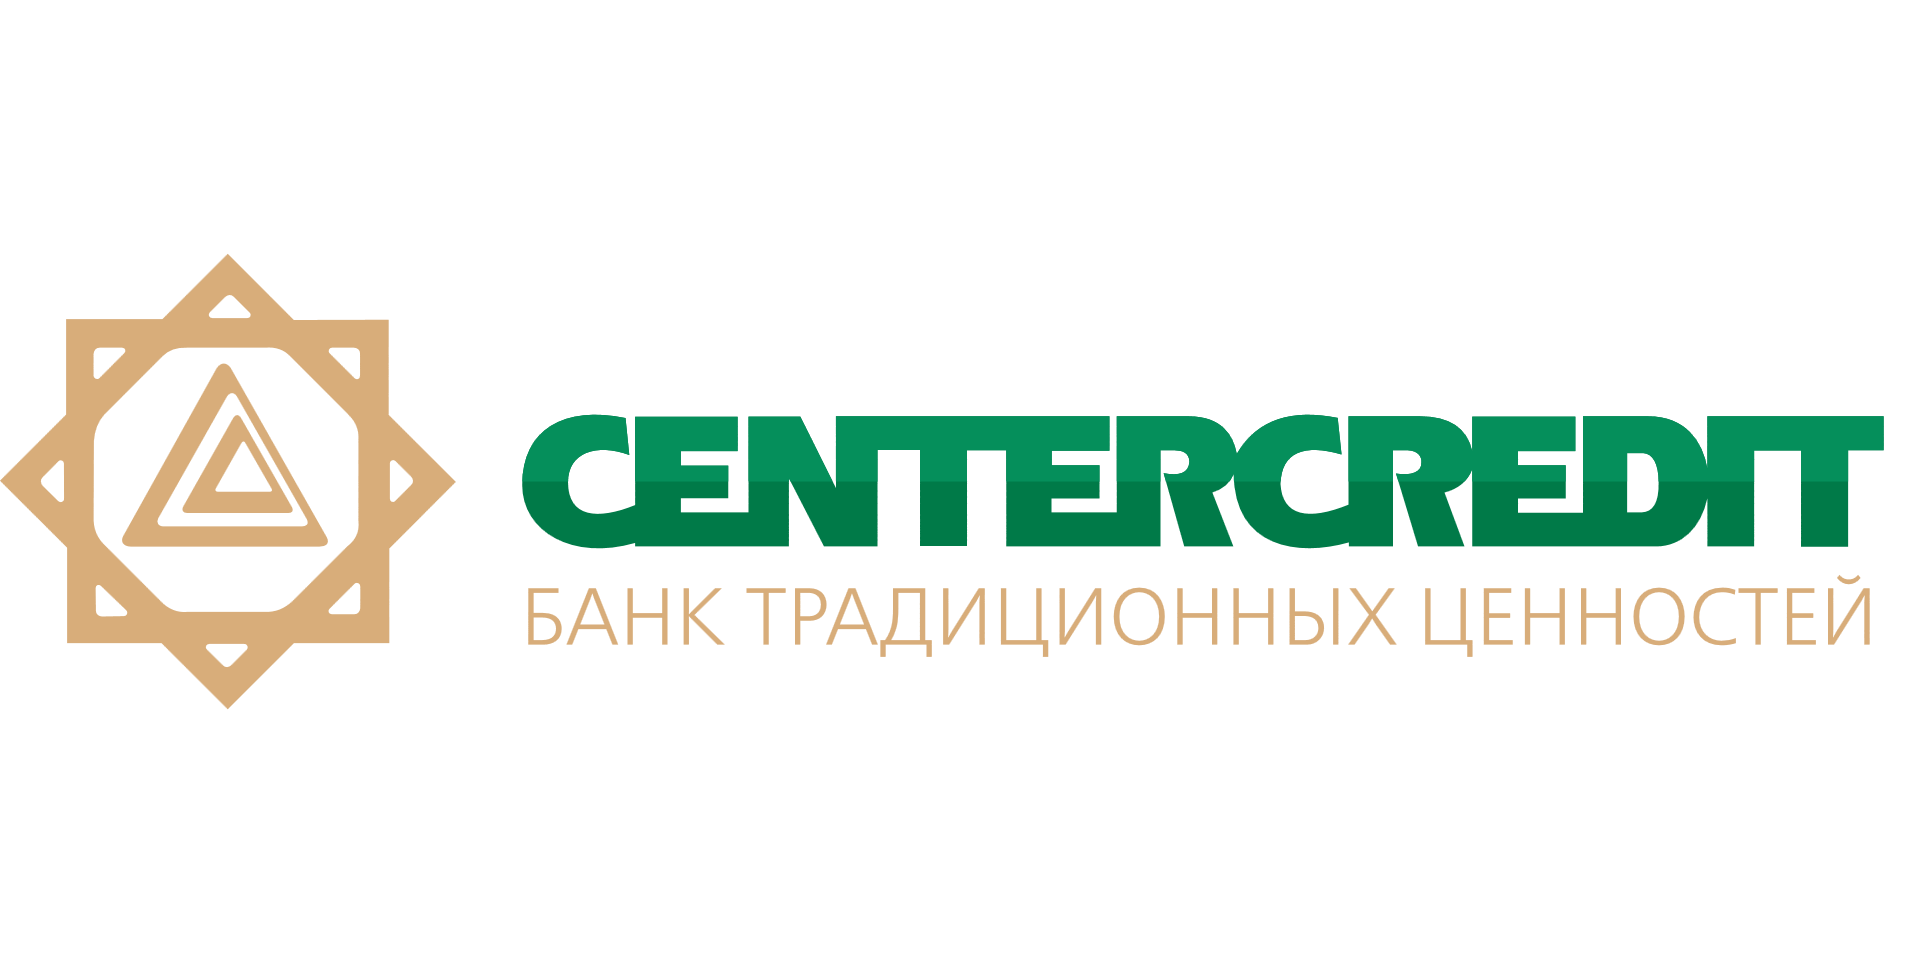 Отзывы о Банке ЦентрКредит